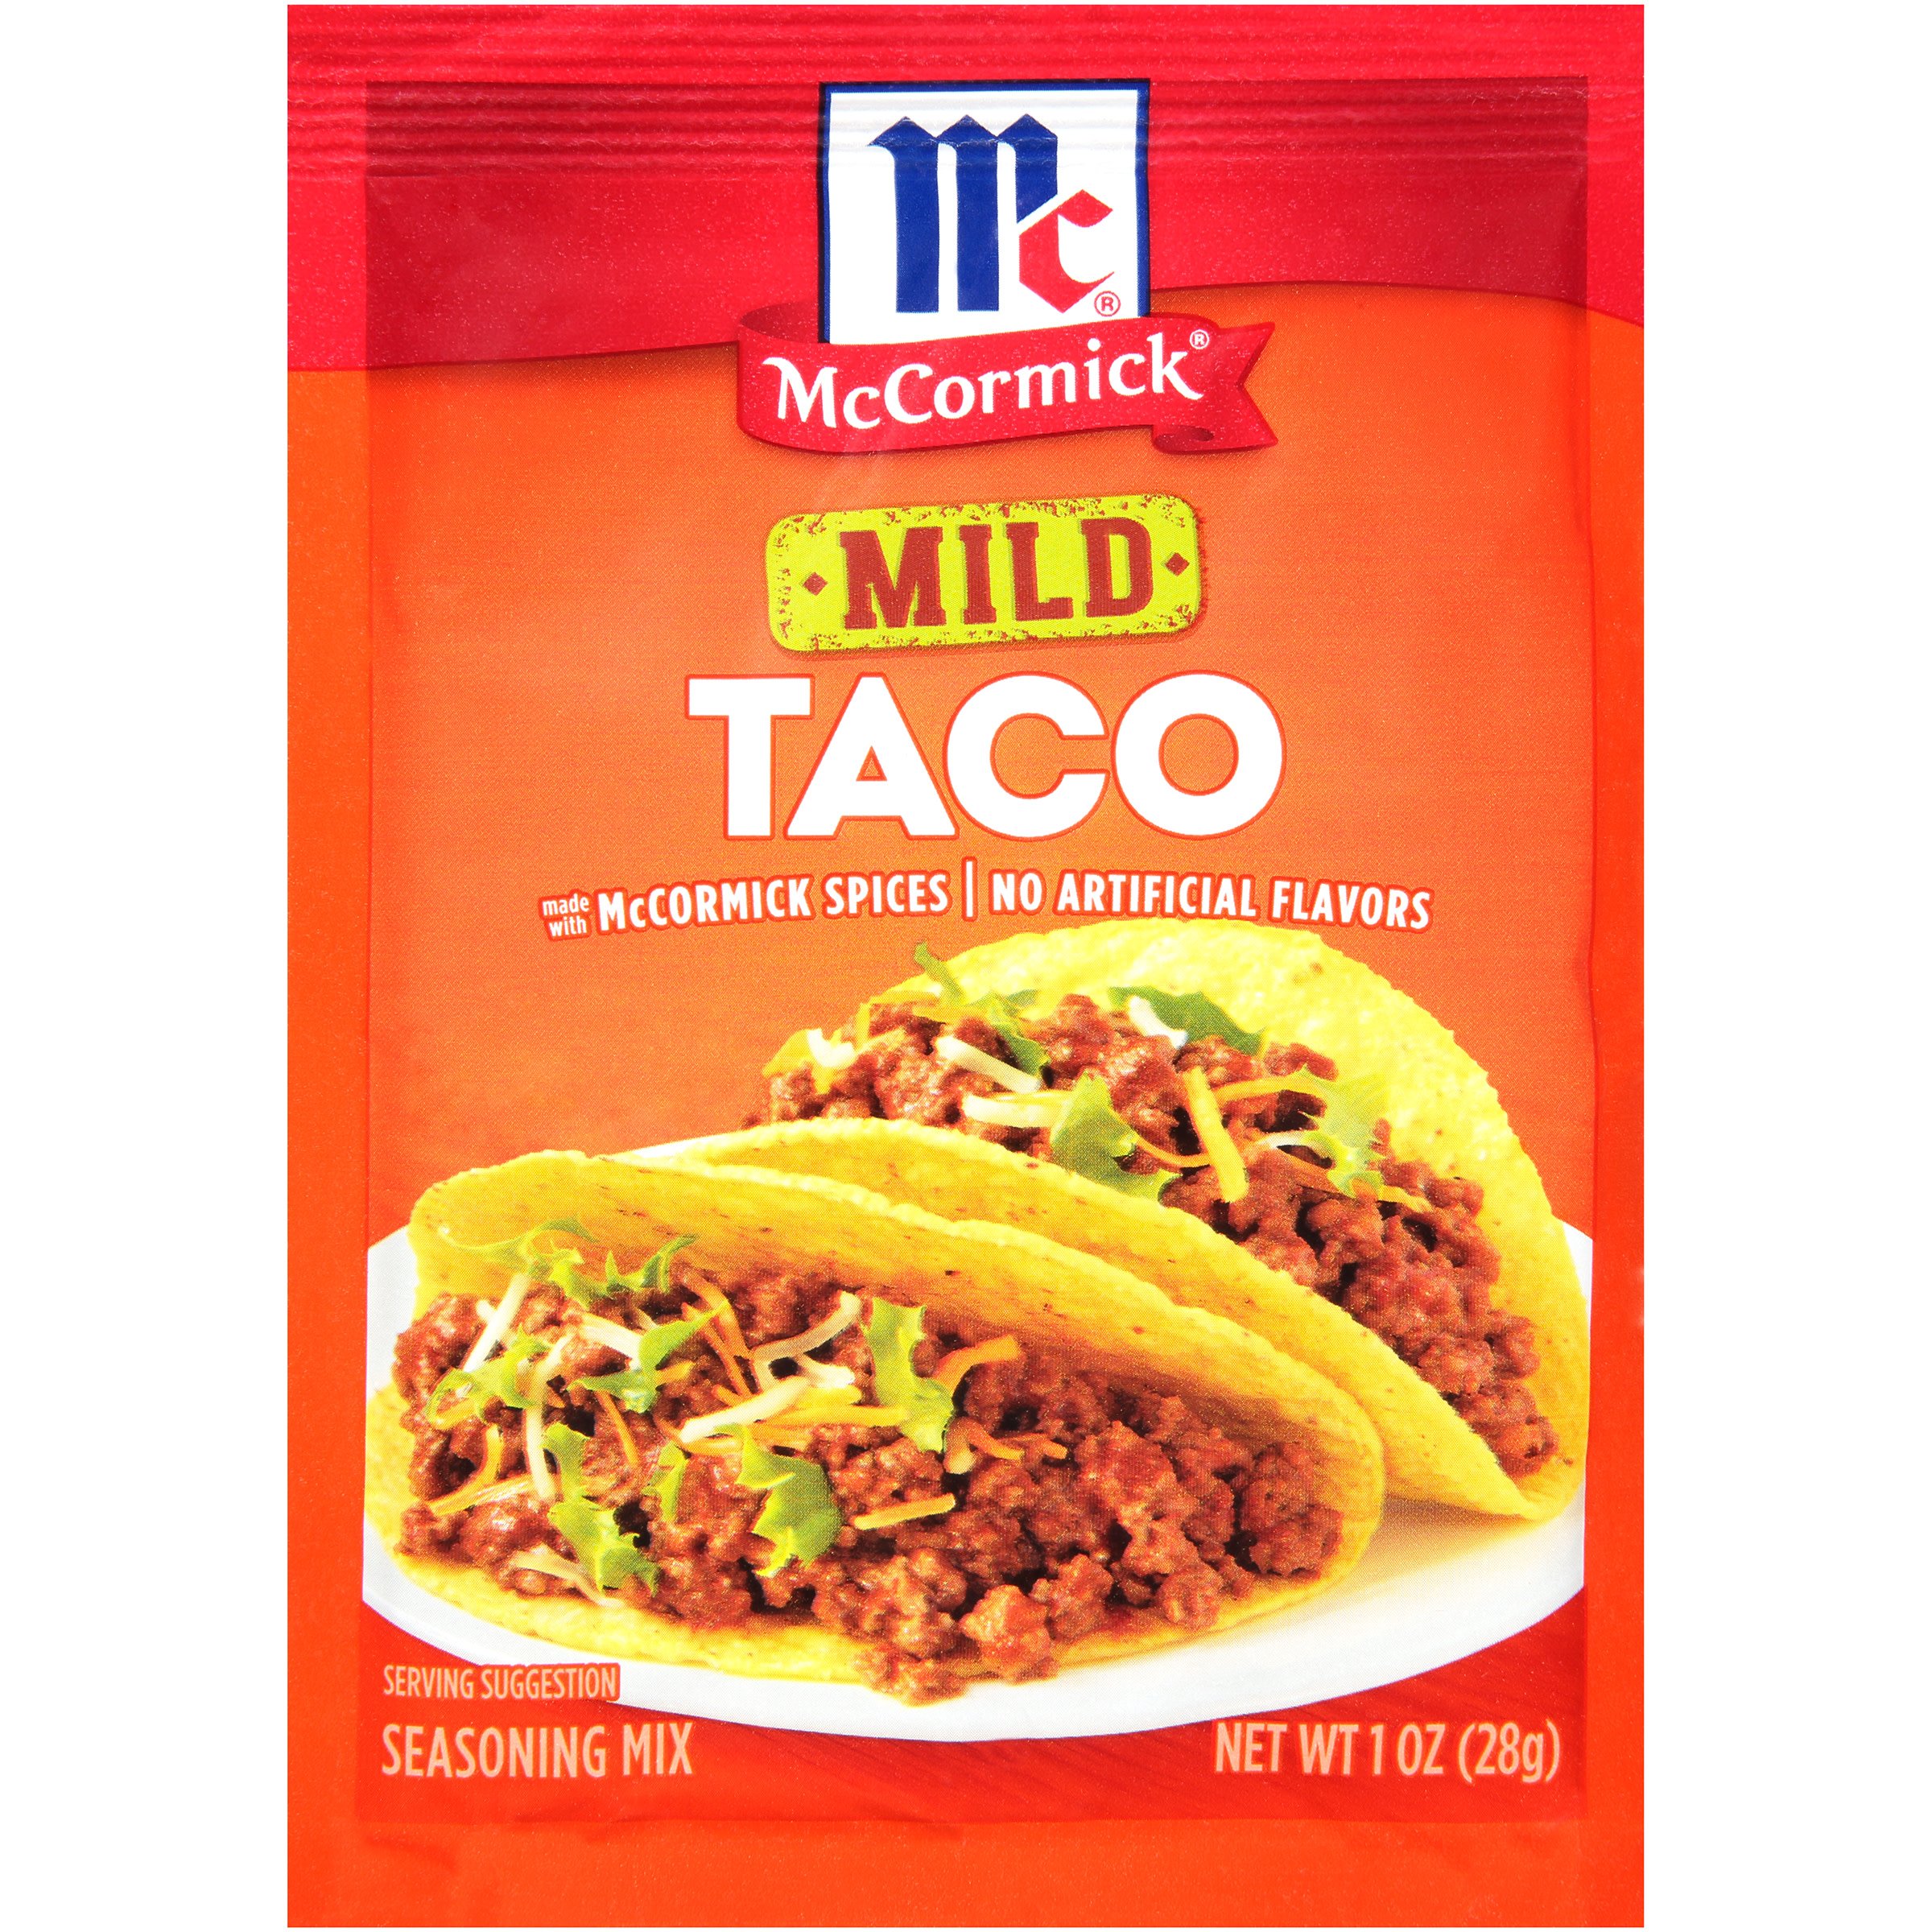 Mccormick Mild Taco Seasoning Mix Shop Spice Mixes At H E B 1184